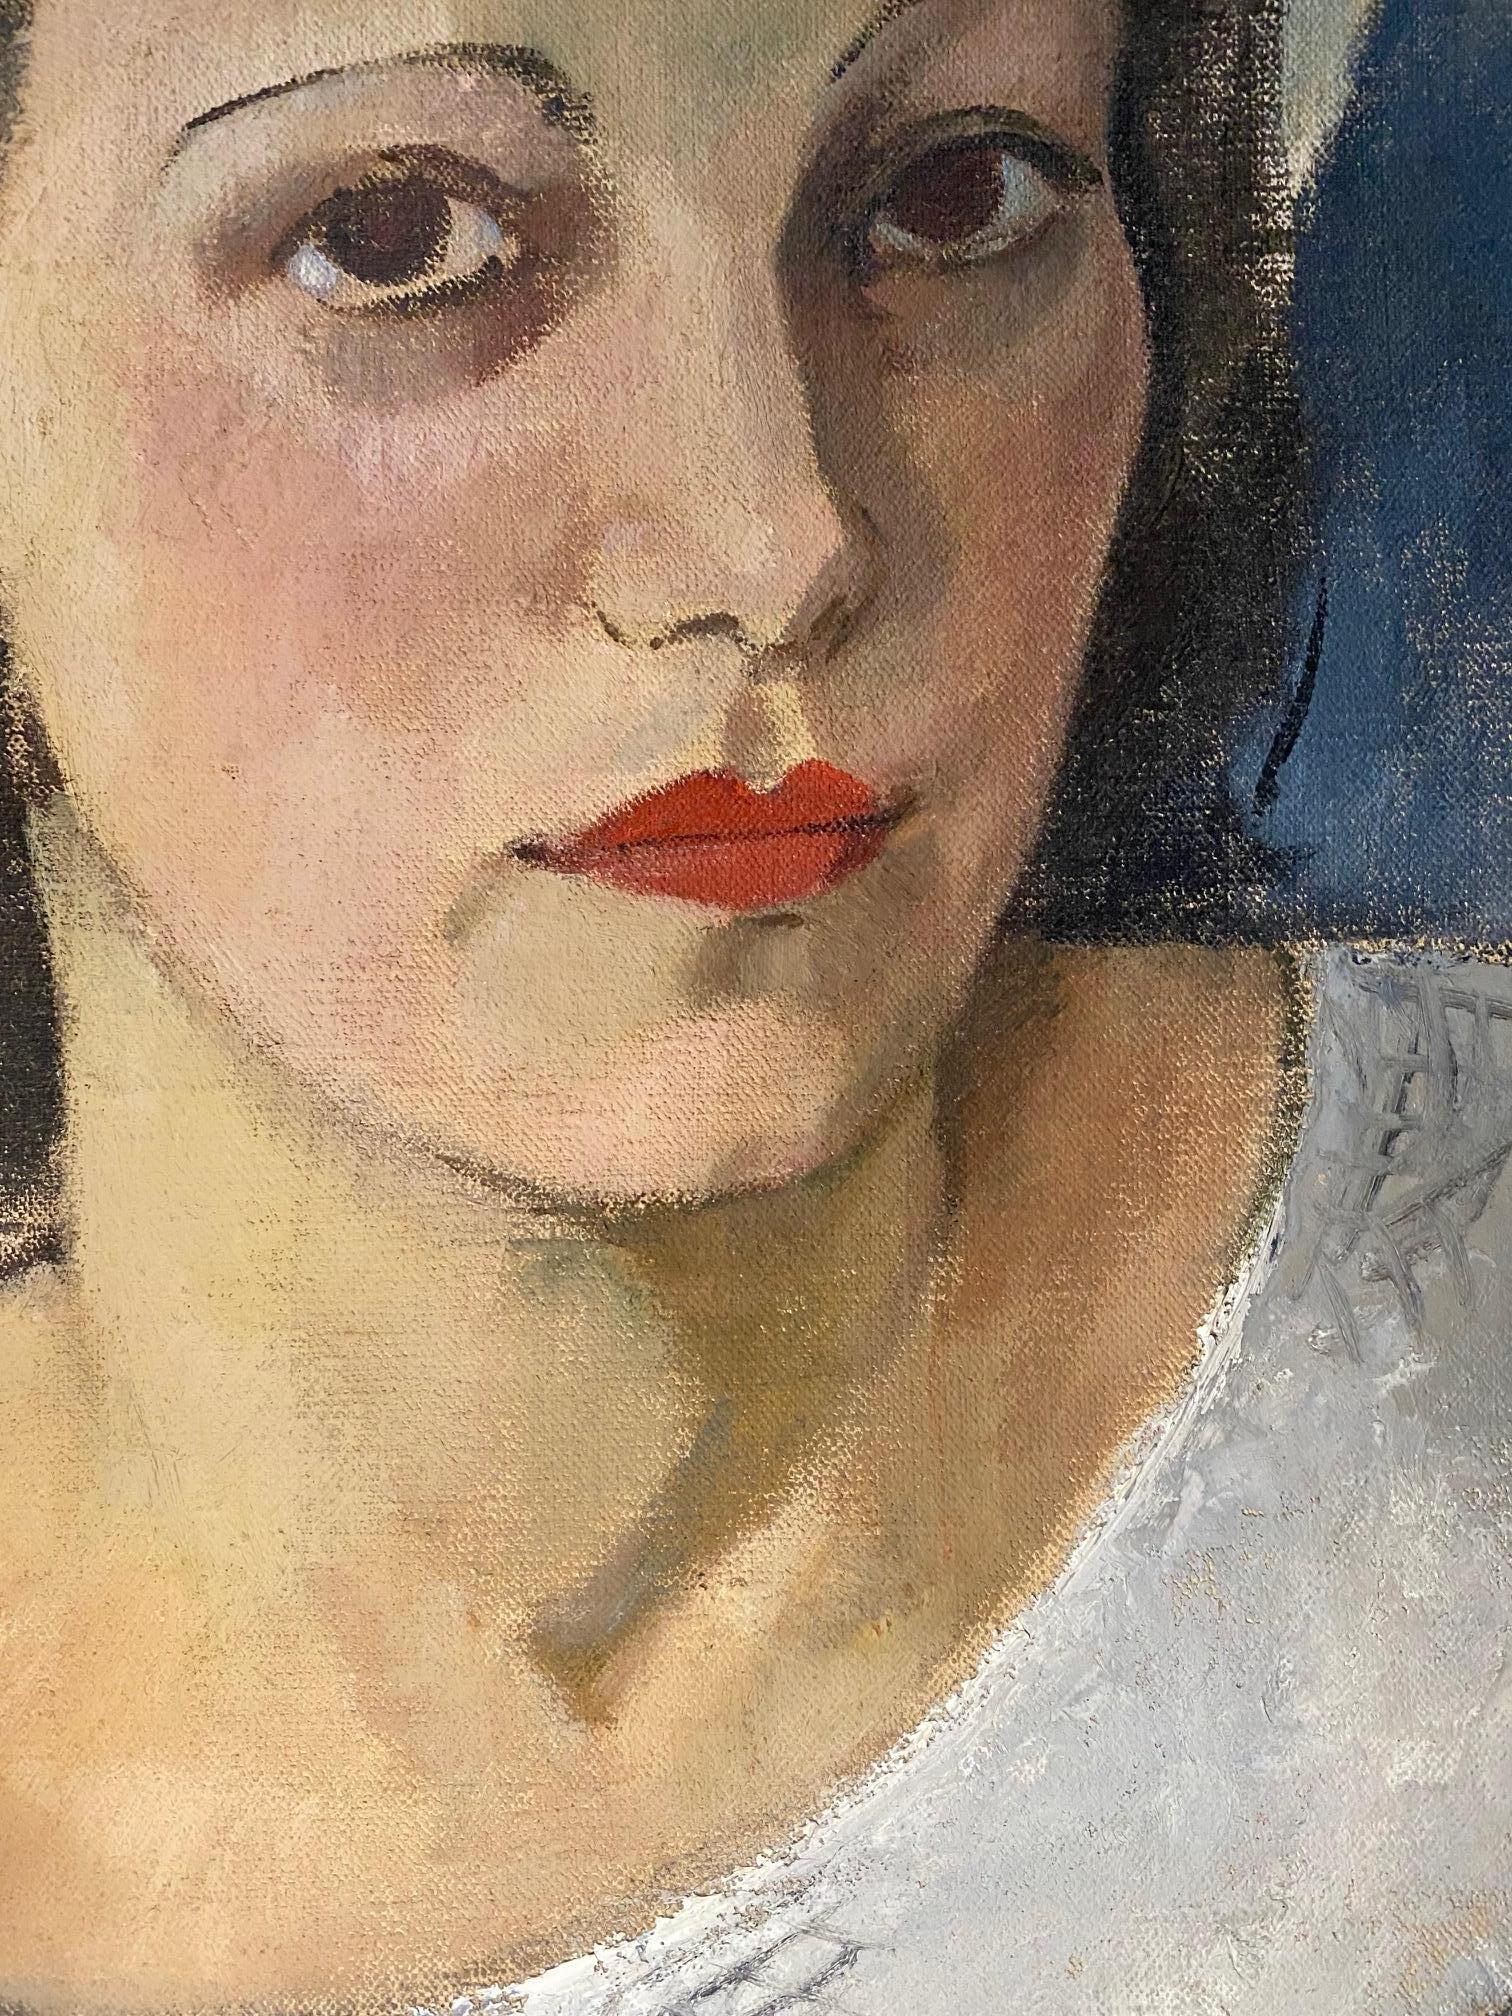 Woman portrait by RV. Kopecek - Oil on canvas 53x63 cm - French School Painting by RV. KOPECEK